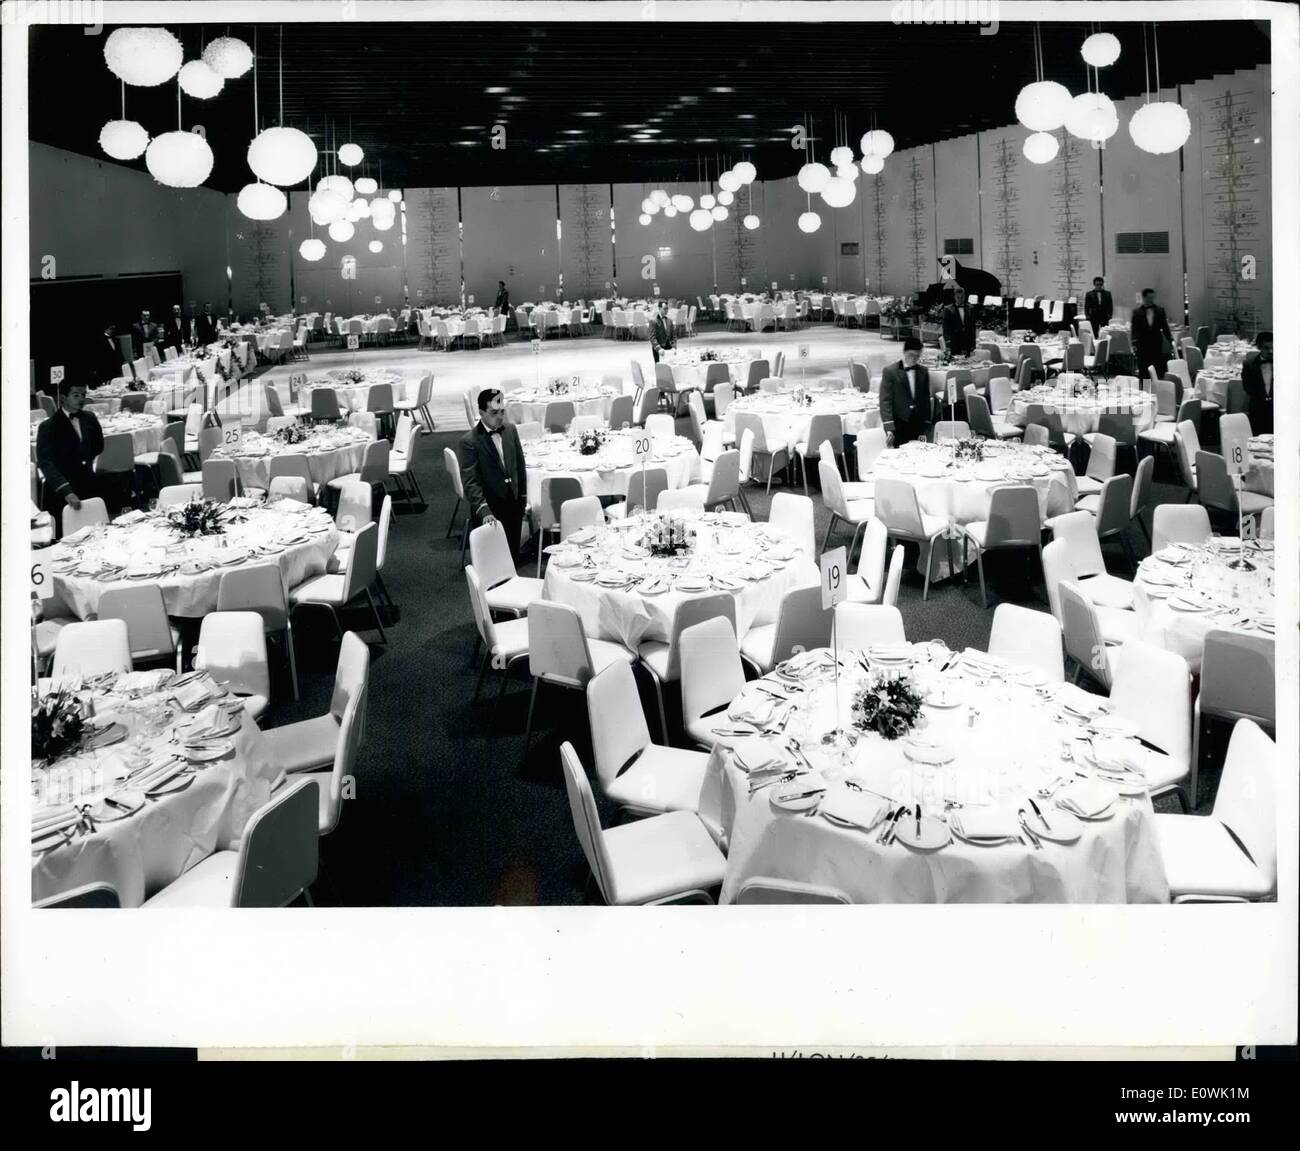 Abril 04, 1963 - Diseñado por Sir Hugh Casson, el Gran Salón de Baile del Hotel London Hilton puede albergar 1.000 personas cómodamente durante un banquete, o 800 para una cena con baile. La habitación, que es de 126'x 80' puede dividirse en tres salas separadas. Vigas espaciados un acabado en color bronce cruzando el techo ocultar los diversos efectos de iluminación especiales. La vynide enfrentan las paredes son en blanco con oro y gris alivio galería trama. El principal elemento decorativo es diez candelabros - cada uno un grupo de globos de diferentes tamaños. Los colores predominantes en la alfombra son ricos tonos rojos y naranjas Foto de stock